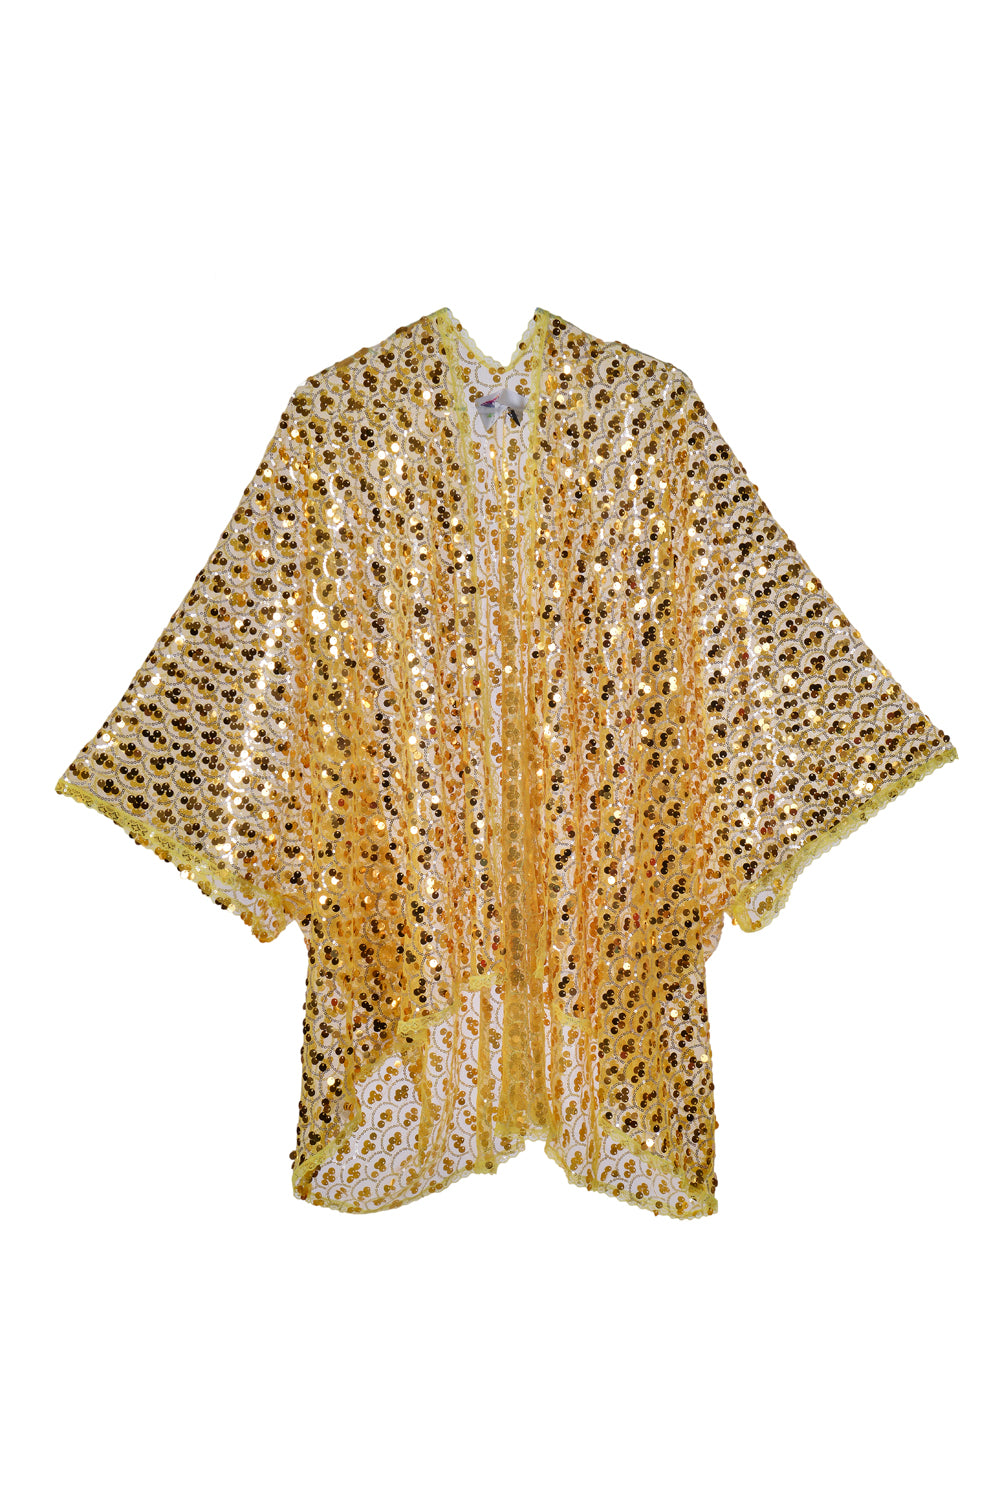 Sequin Kimono- Gold Treasure